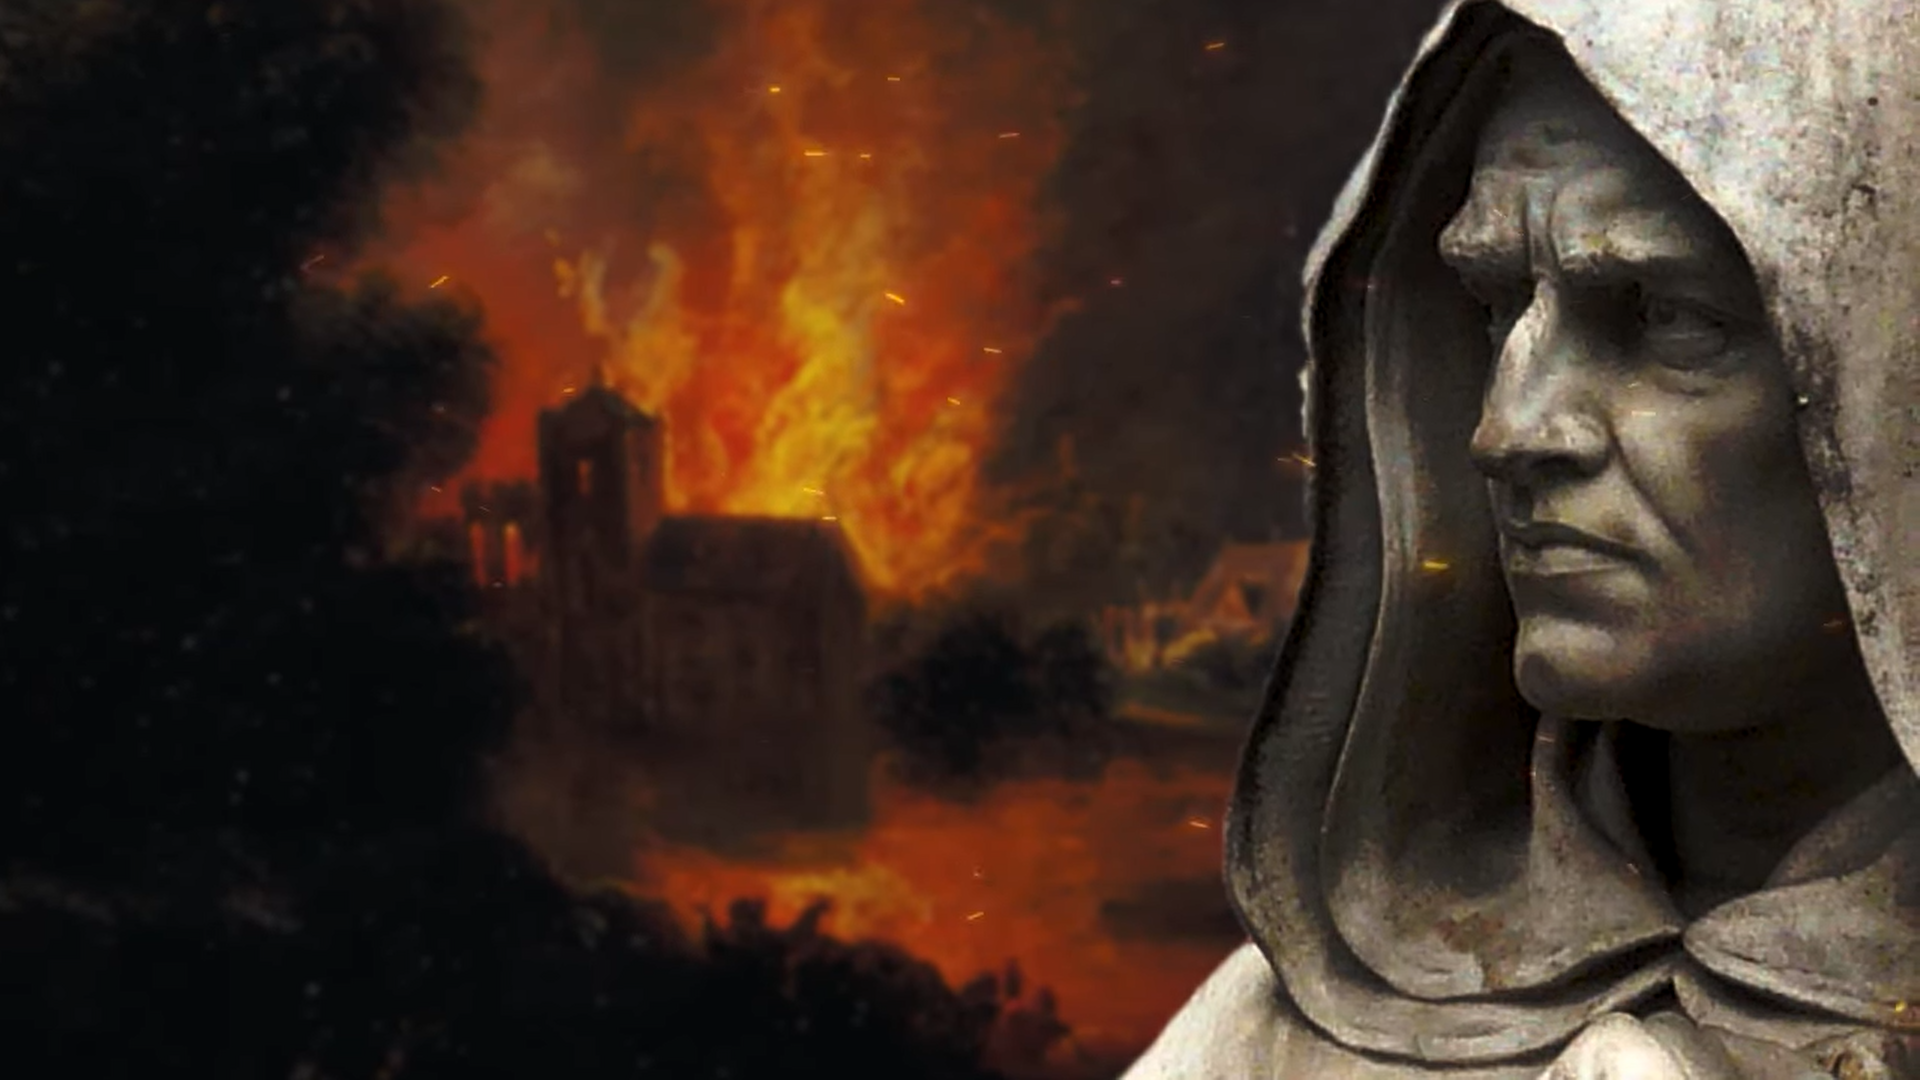 Ο Ιταλός φιλόσοφος που κάηκε στην πυρά ως “αιρετικός”. Γιατί τον αποκαλούν πρώτο μάρτυρα της επιστήμης